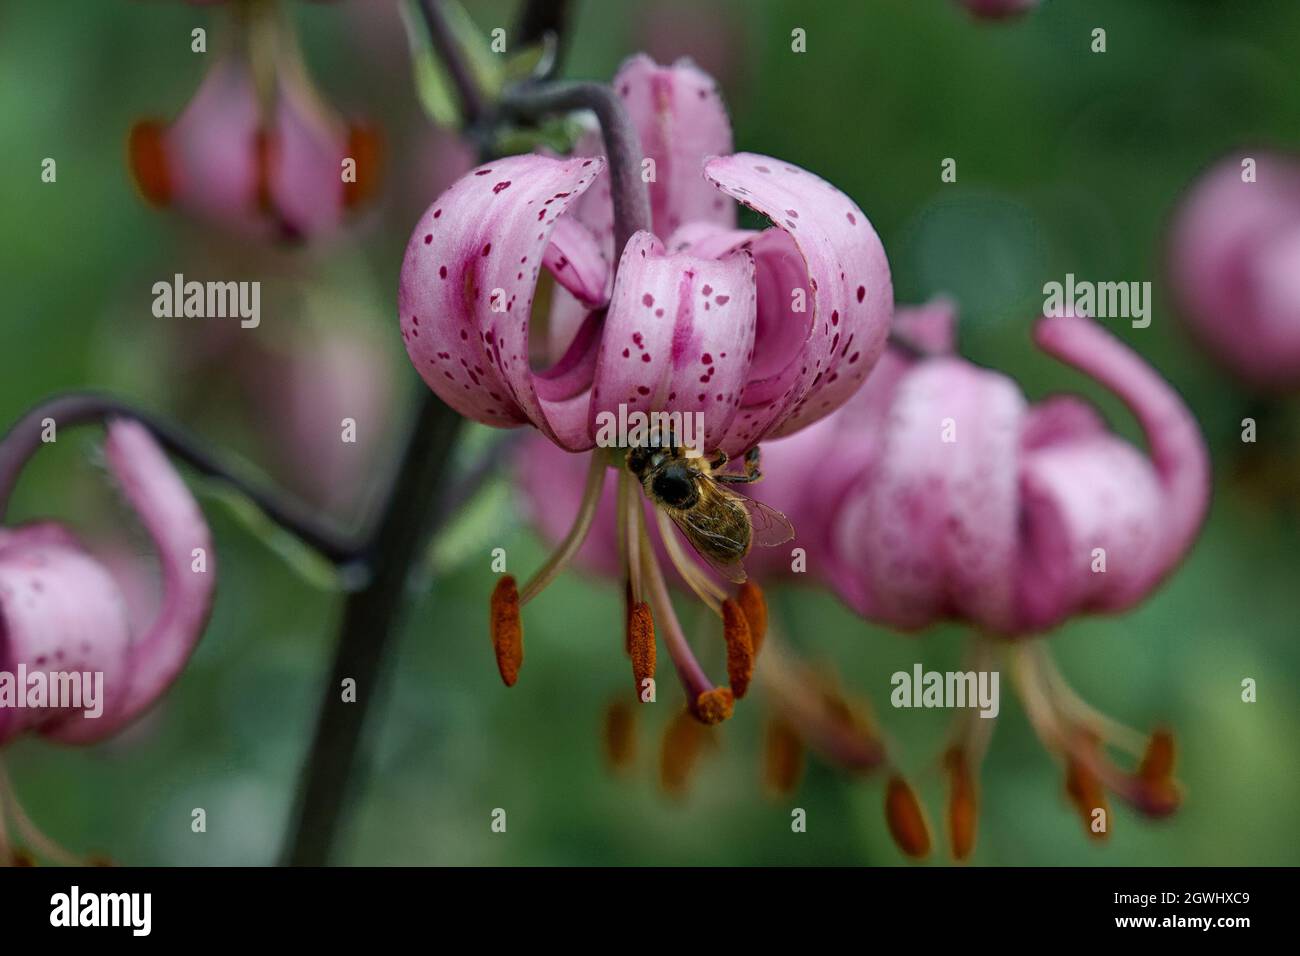 Una abeja recoge néctar de las flores rosadas de lirios silvestres martagon en el jardín Foto de stock